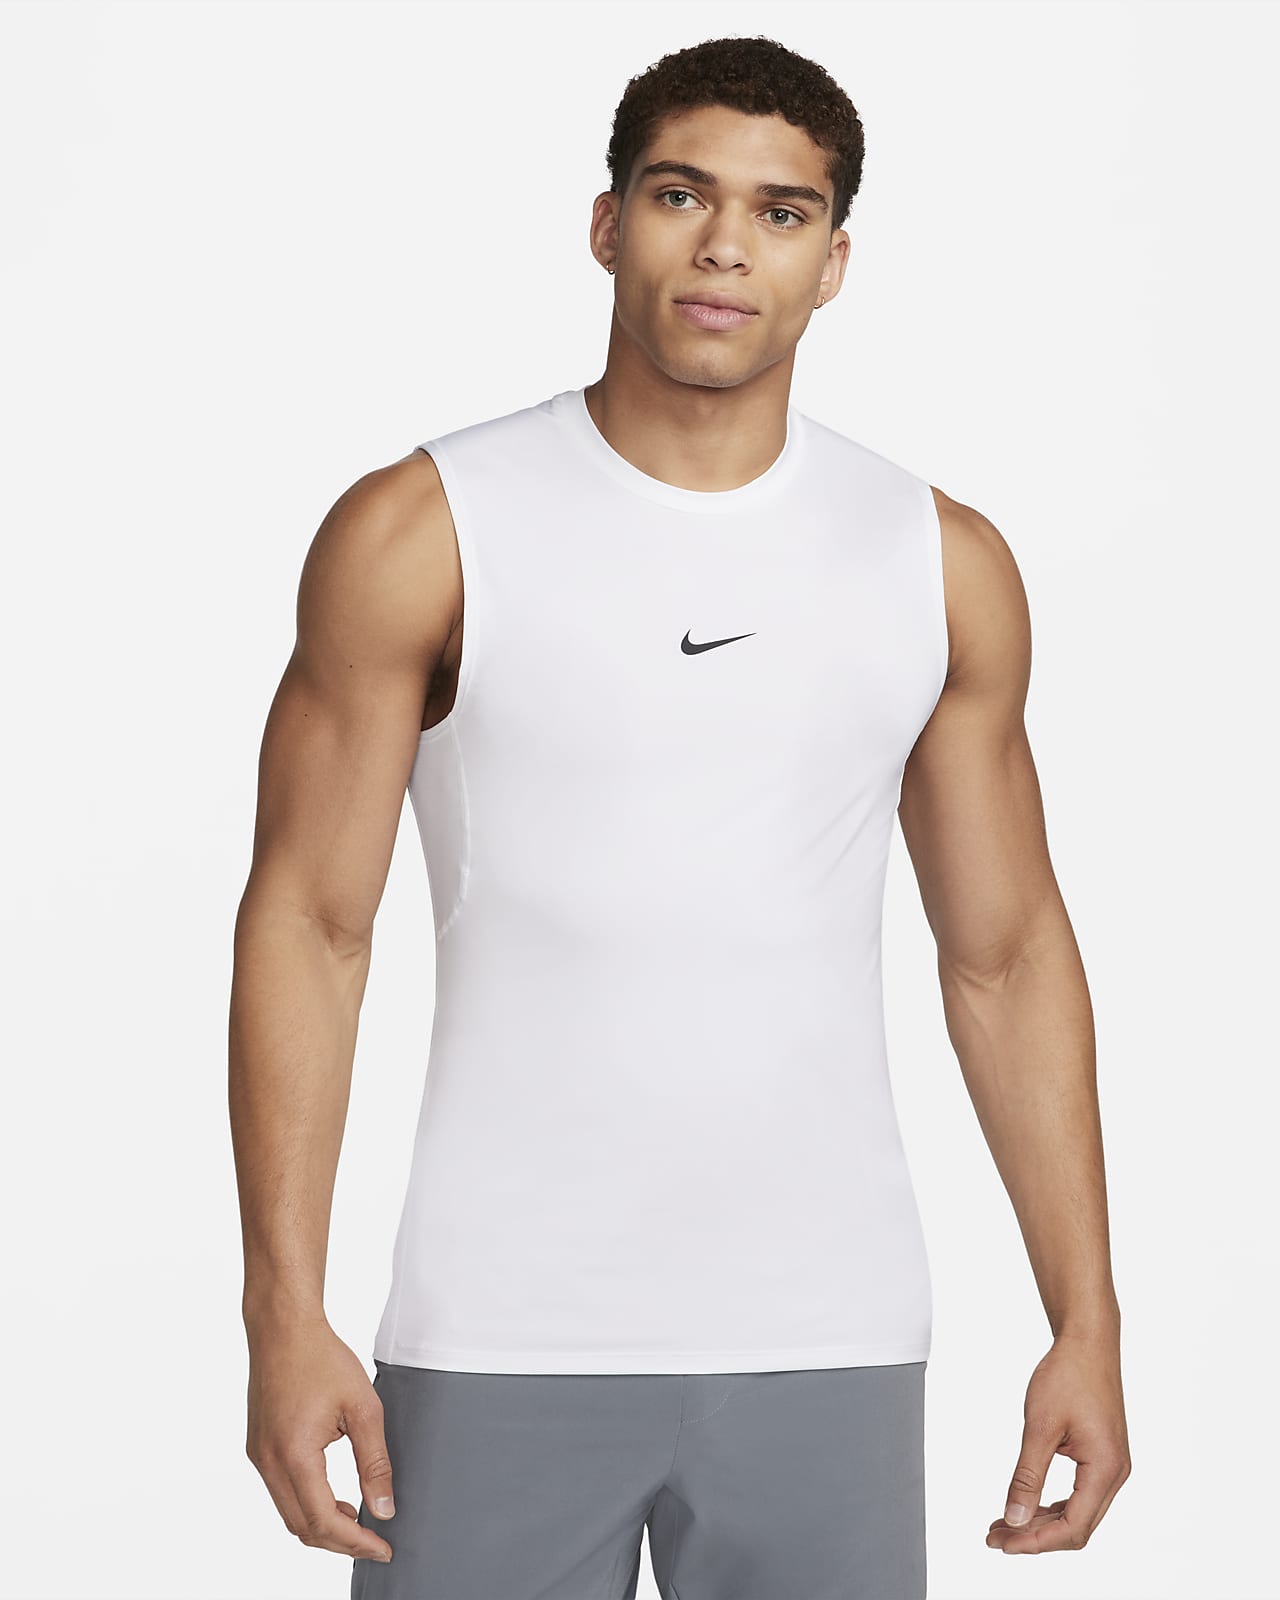 Perenne lana Shinkan Camiseta sin mangas Dri-FIT para hombre Nike Pro. Nike.com